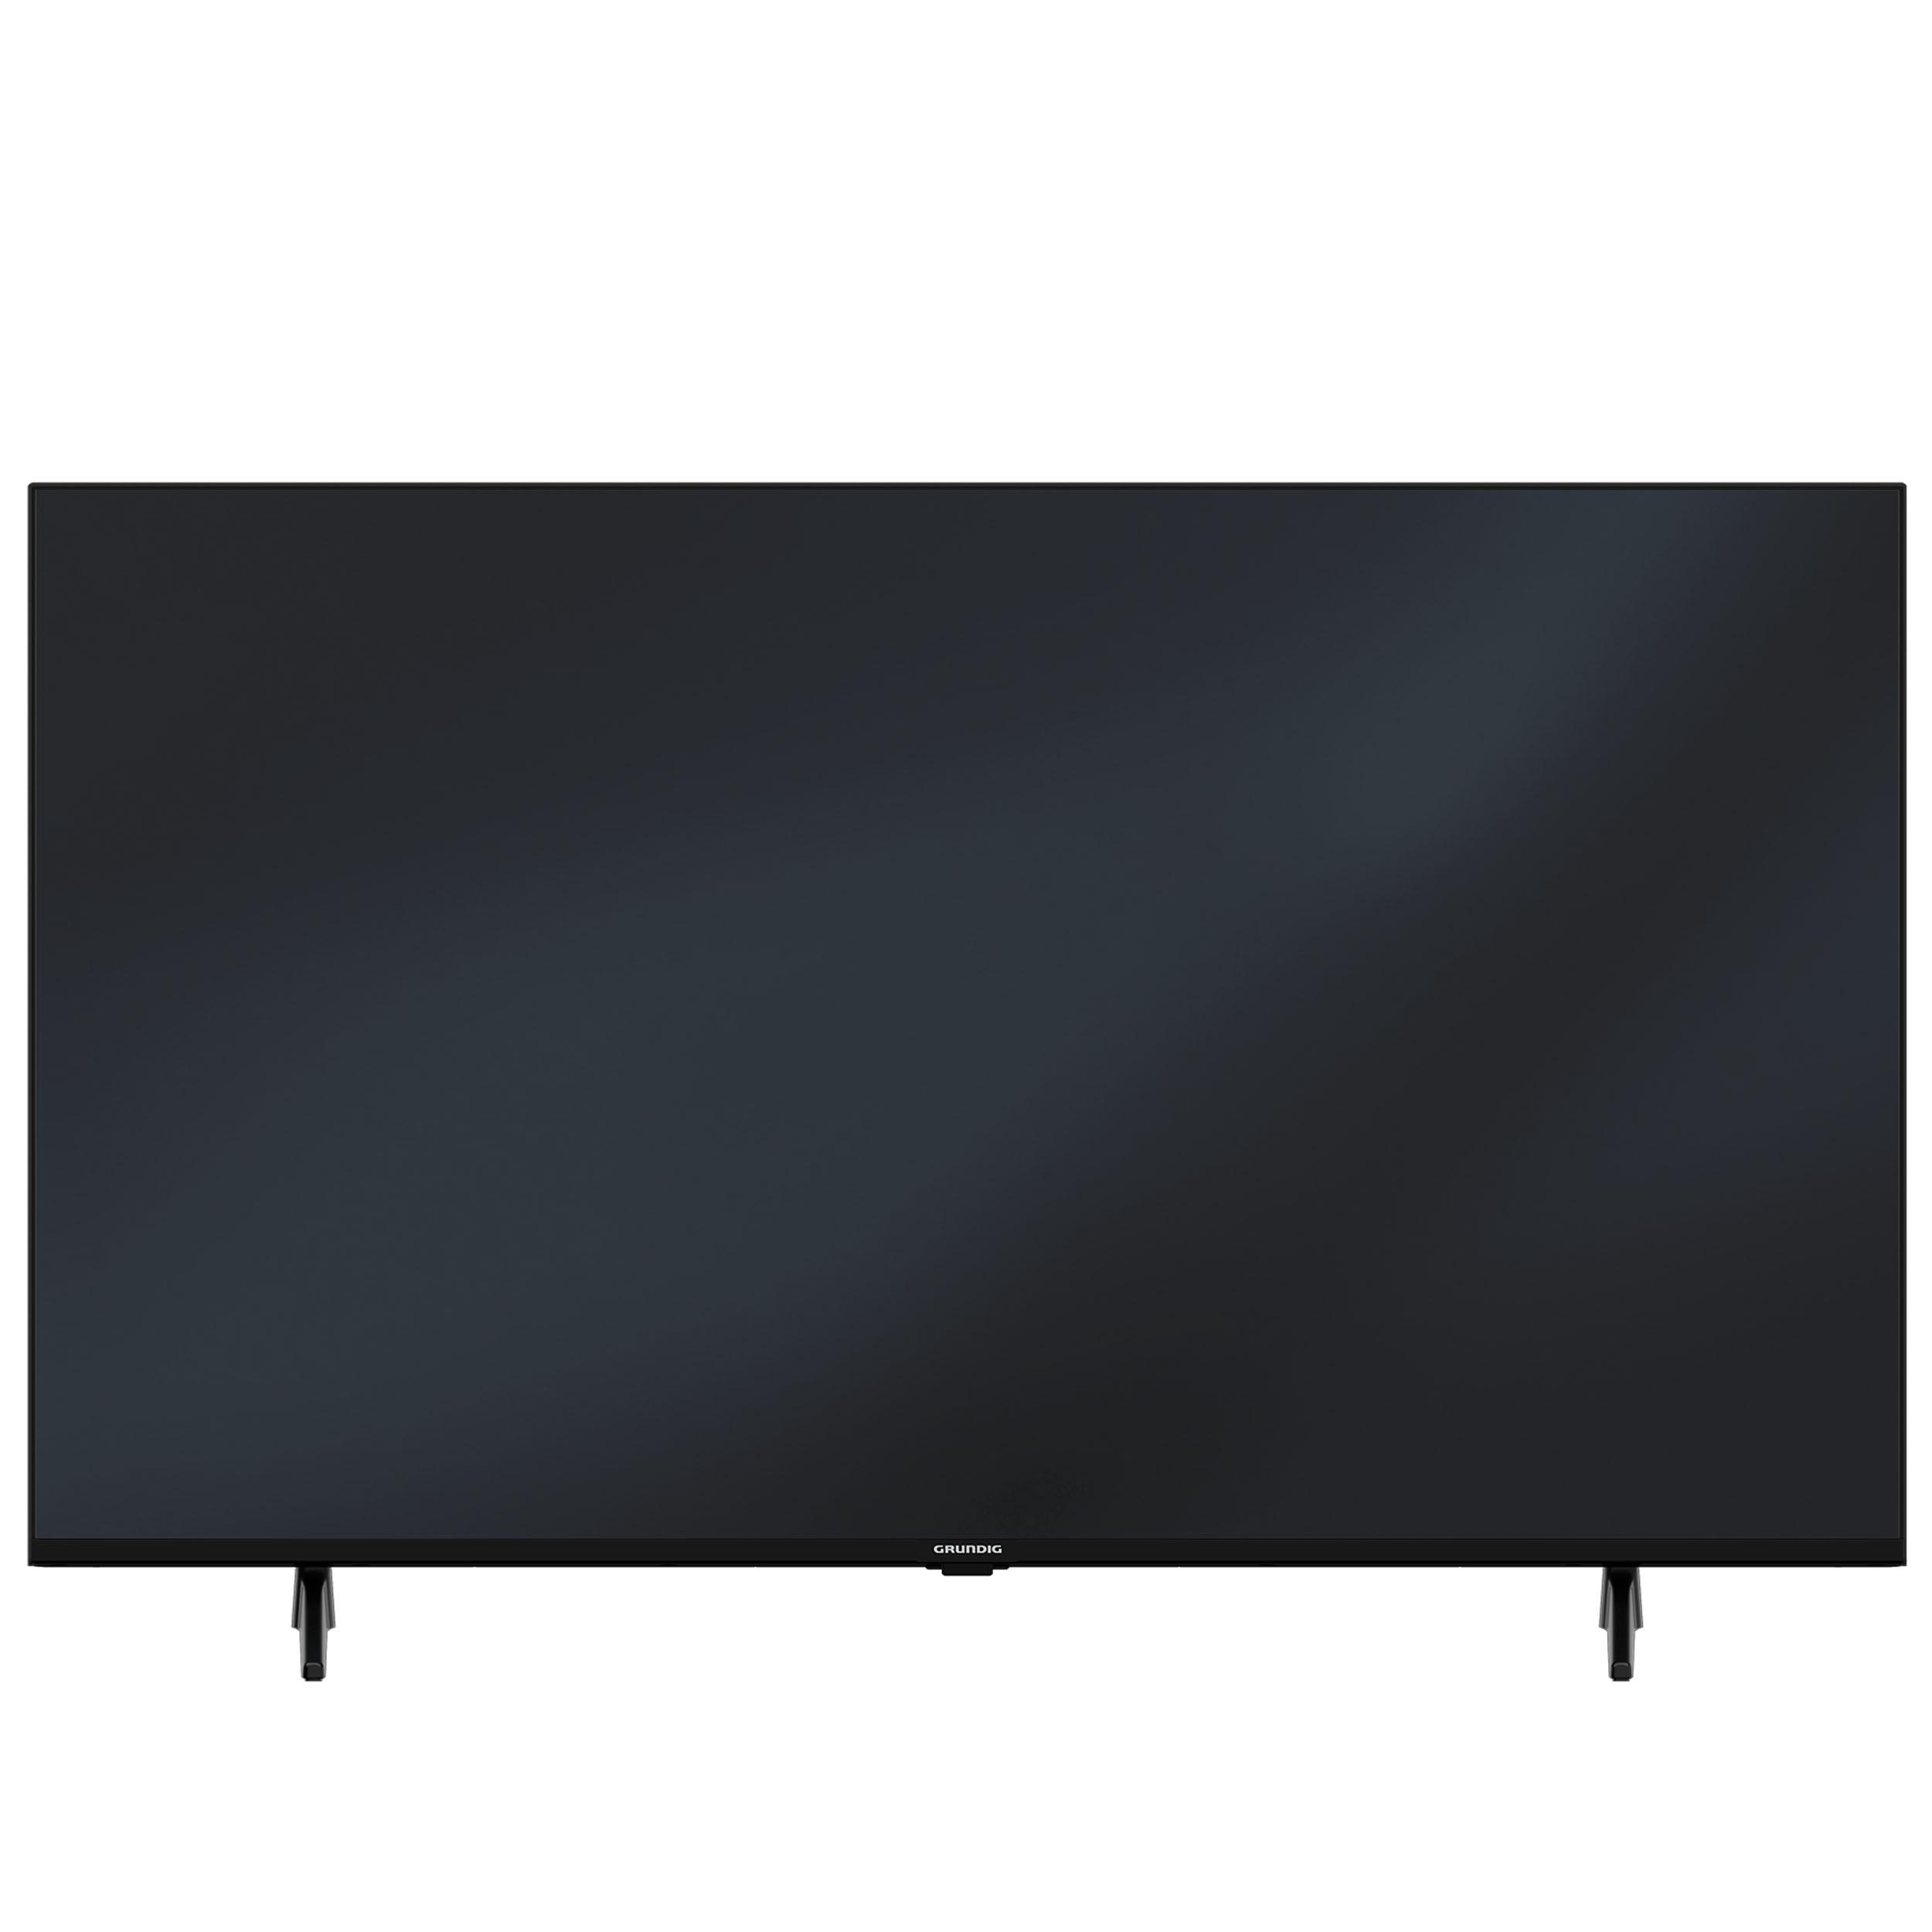 GRUNDIG 75 VCE 223 Smart / Android SMART (75 cm, 11) 189 Zoll UHD TV, 4K, TV